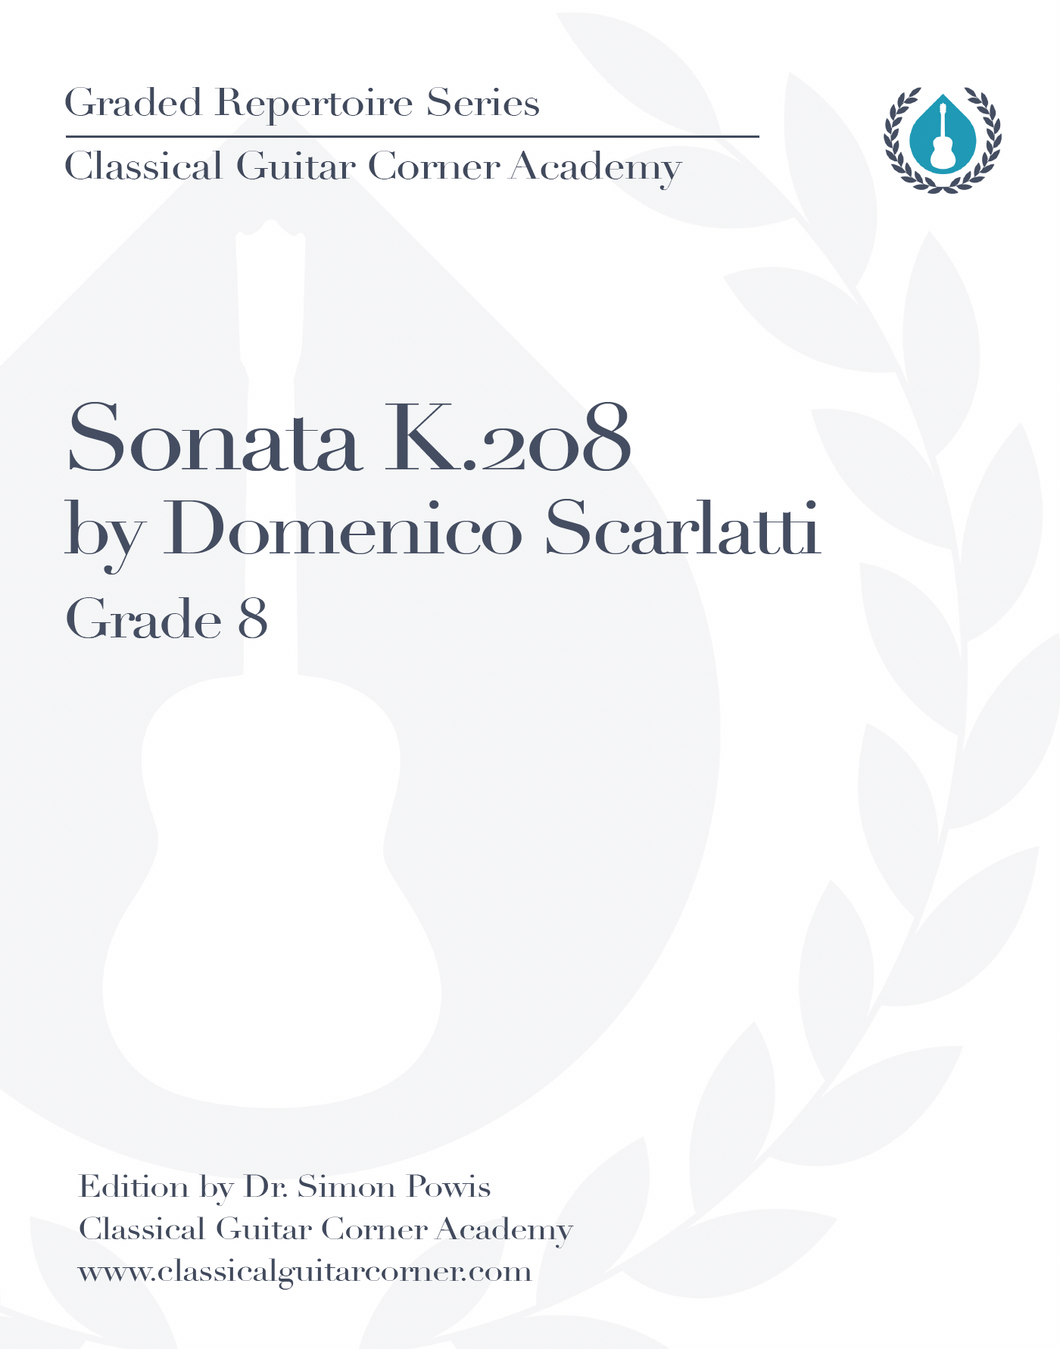 Sonata K208 Domenico Scarlatti [PDF]